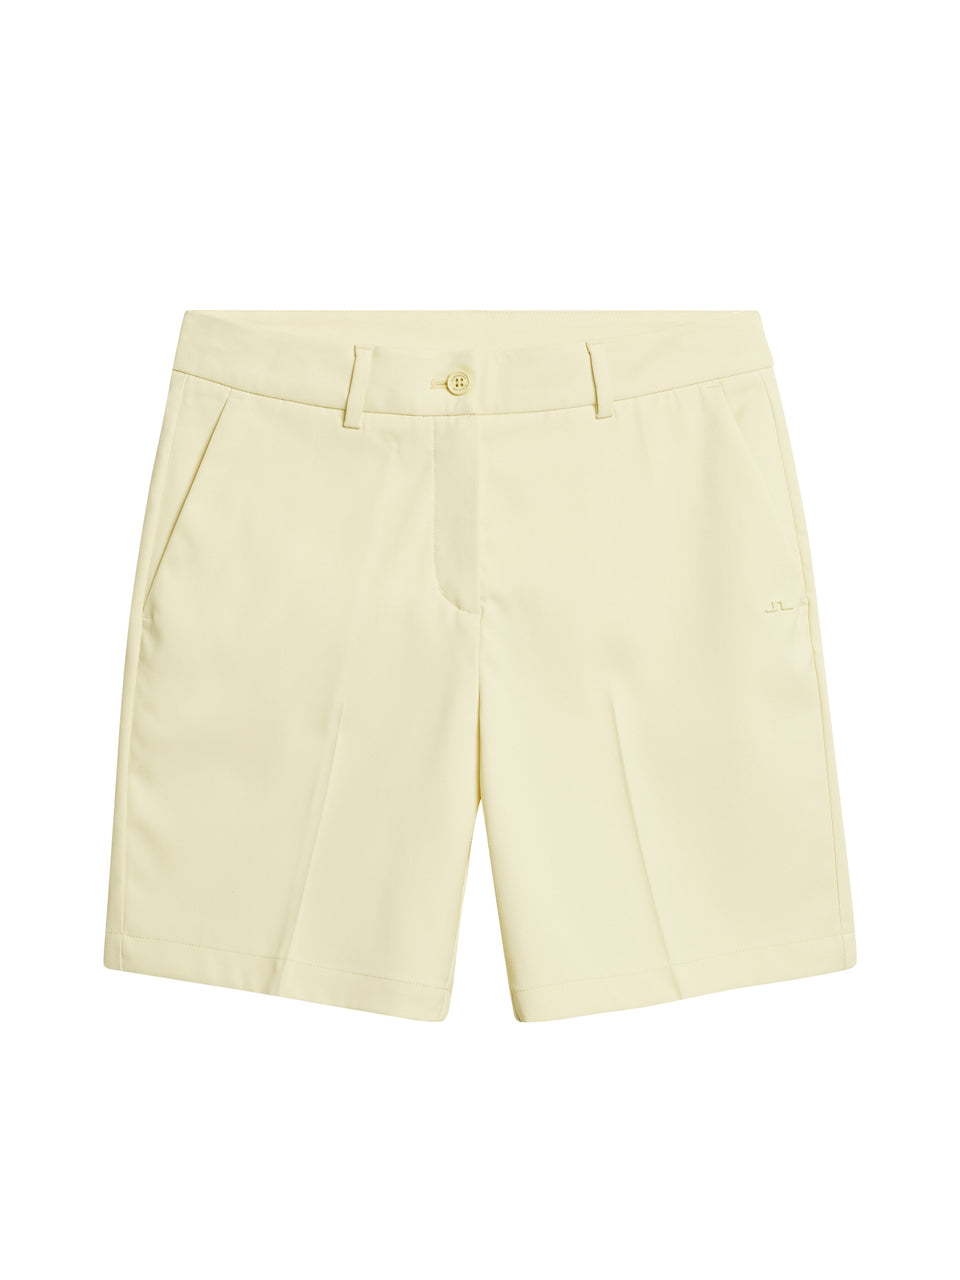 Gwen Long Shorts / Wax Yellow